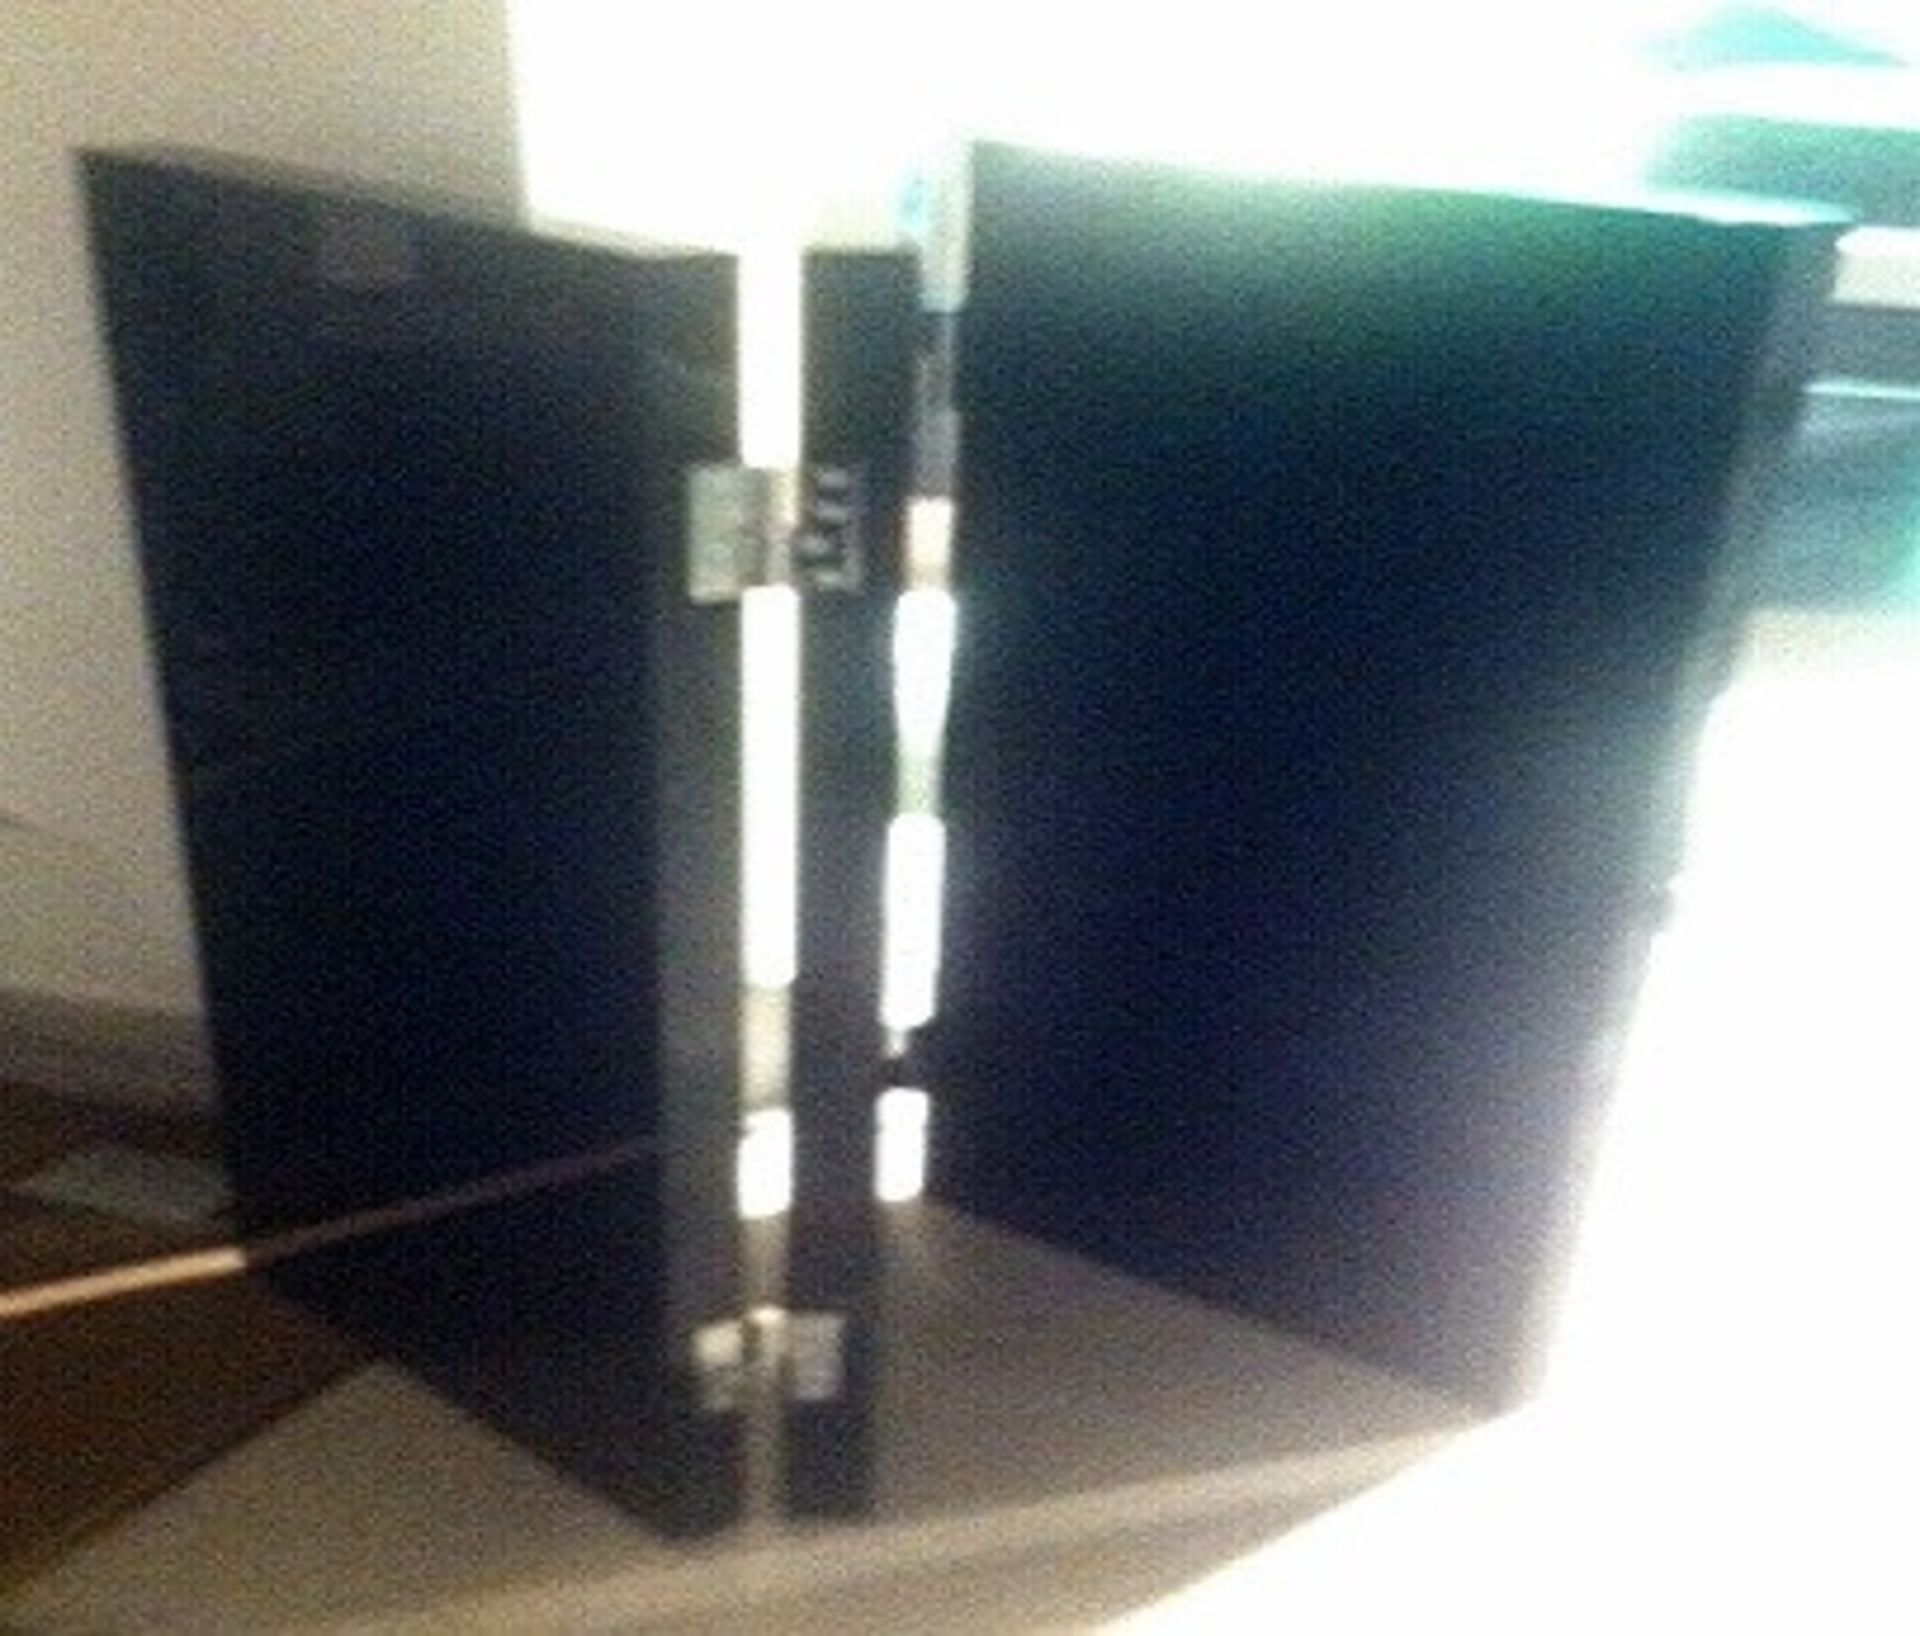 1 x MAXALTO "Arke" Screen (Ss12) - Brushed Black Oak - Ref: 2847718 - width 150cm | height 120cm - - Image 4 of 4